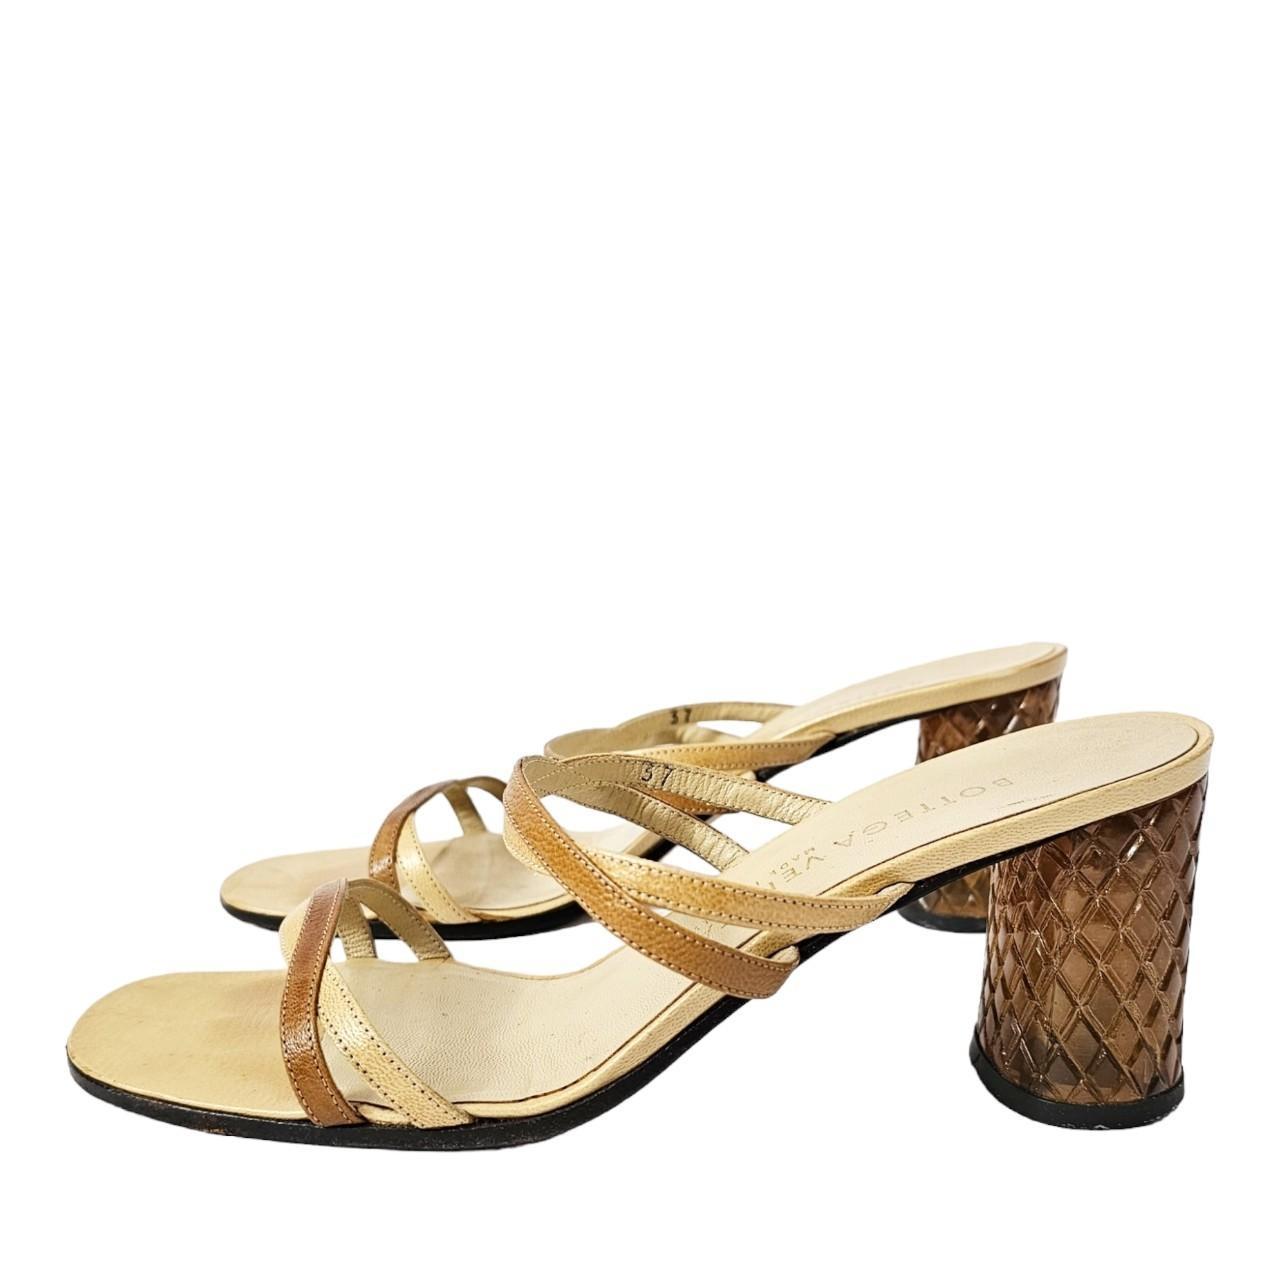 Bottega Veneta Women's Tan and Yellow Sandals - 1